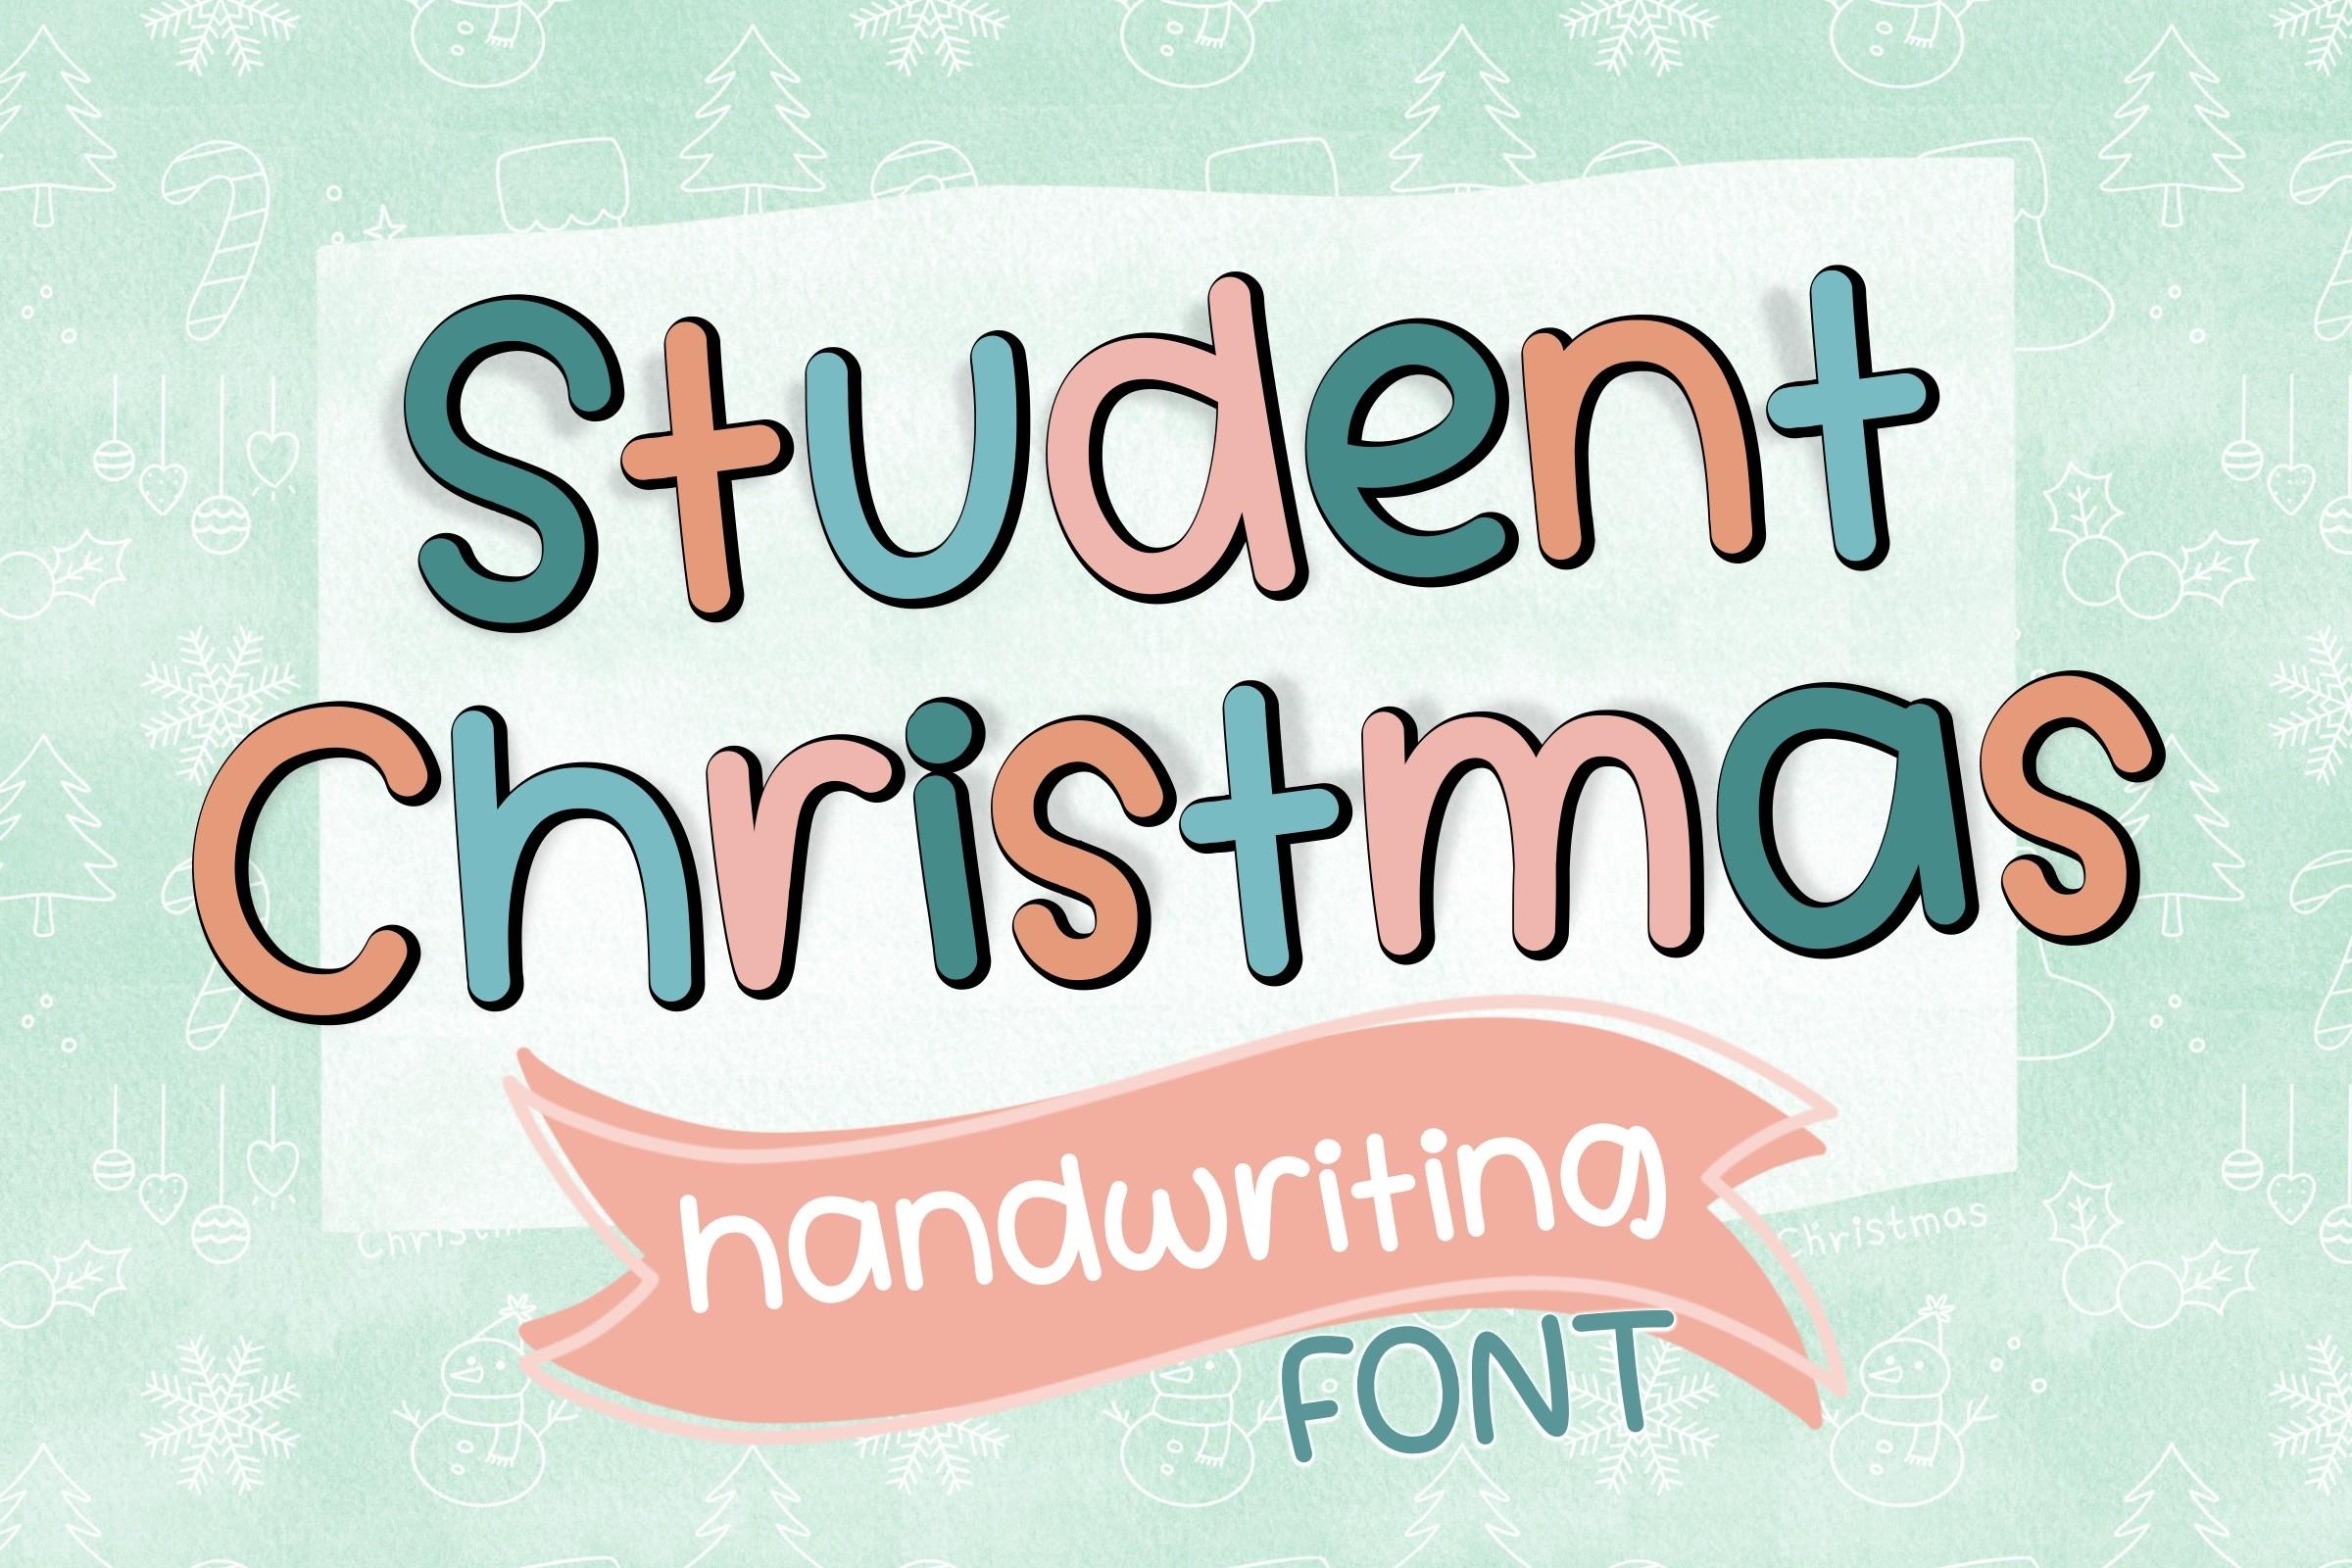 Student Christmas Font